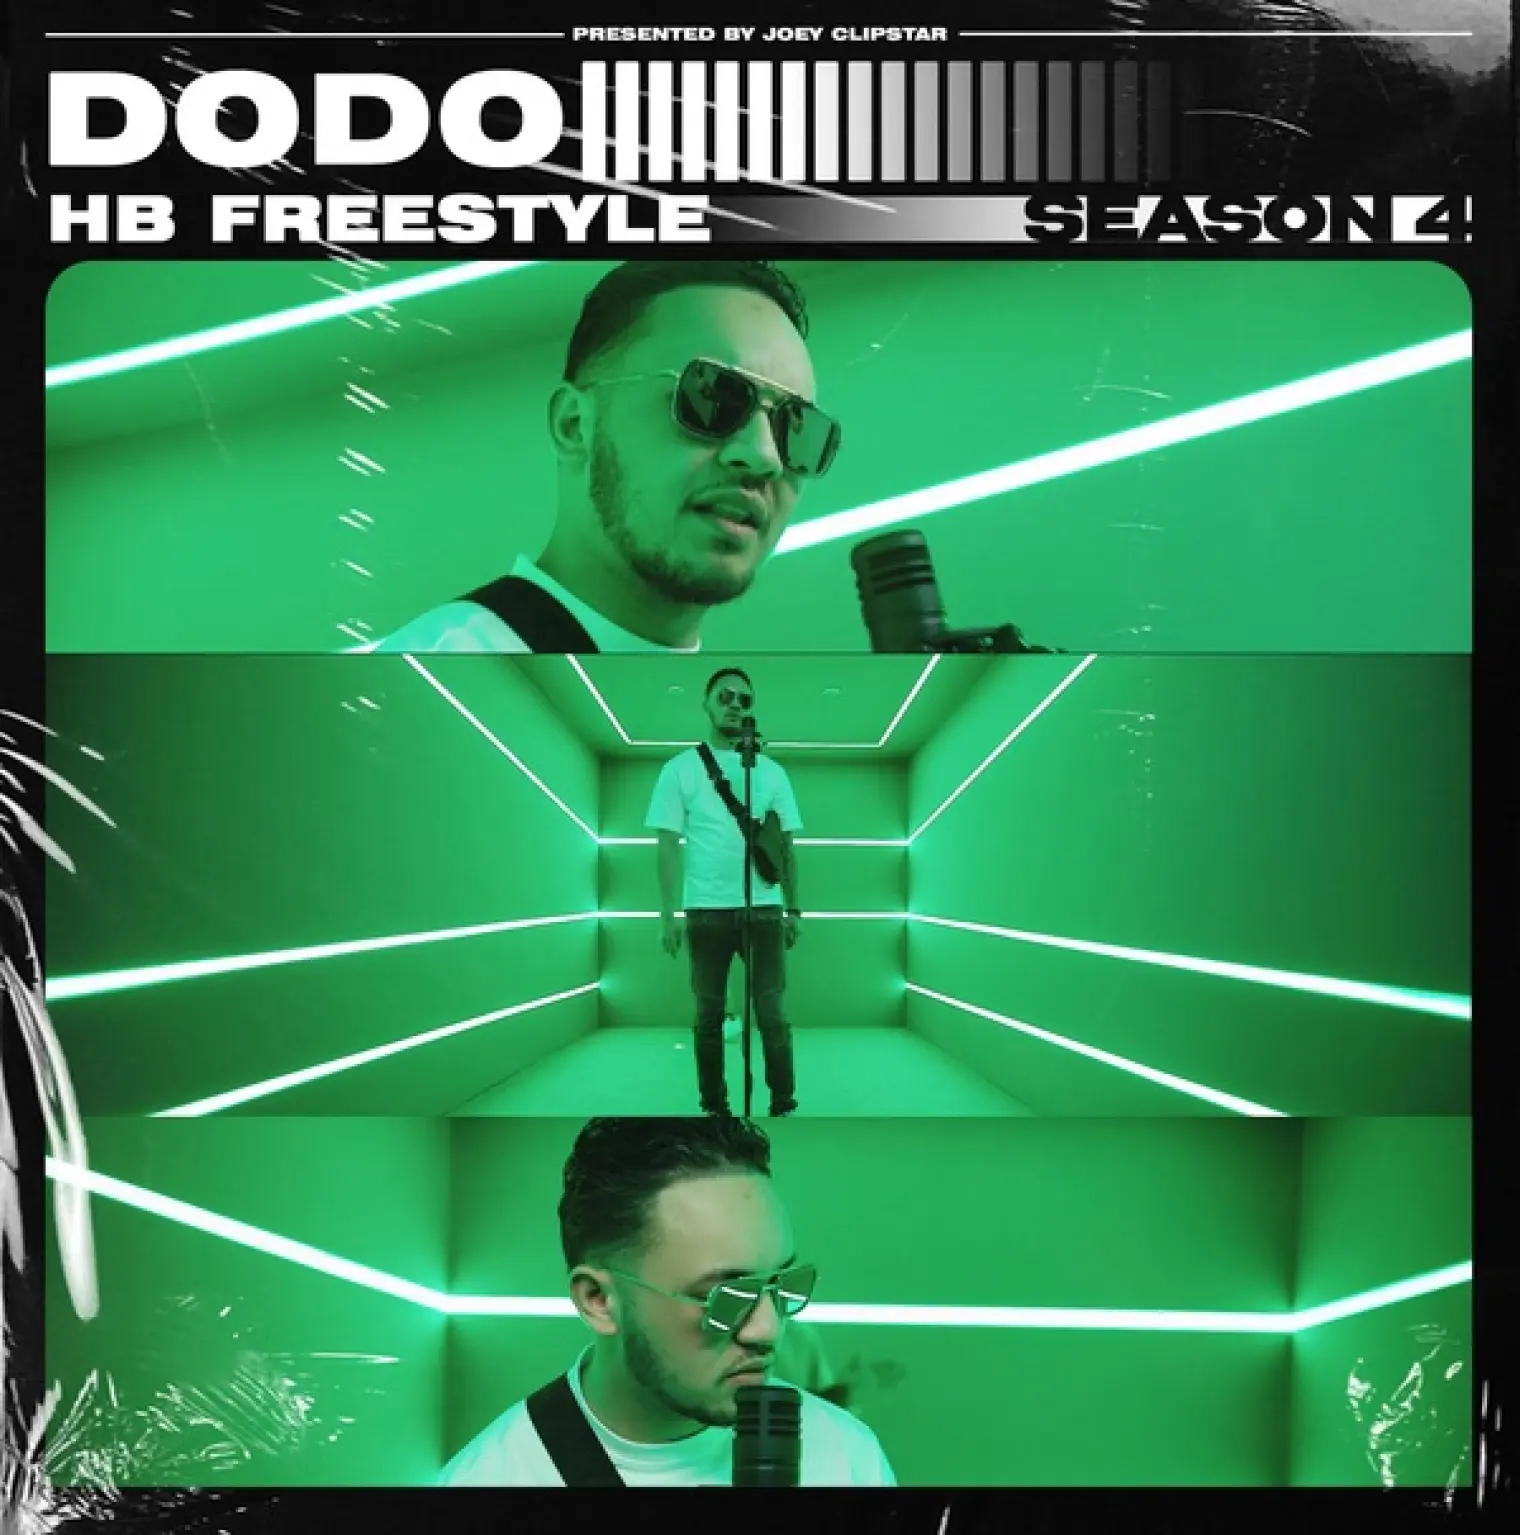 HB Freestyle (Season 4) -  Dodo 